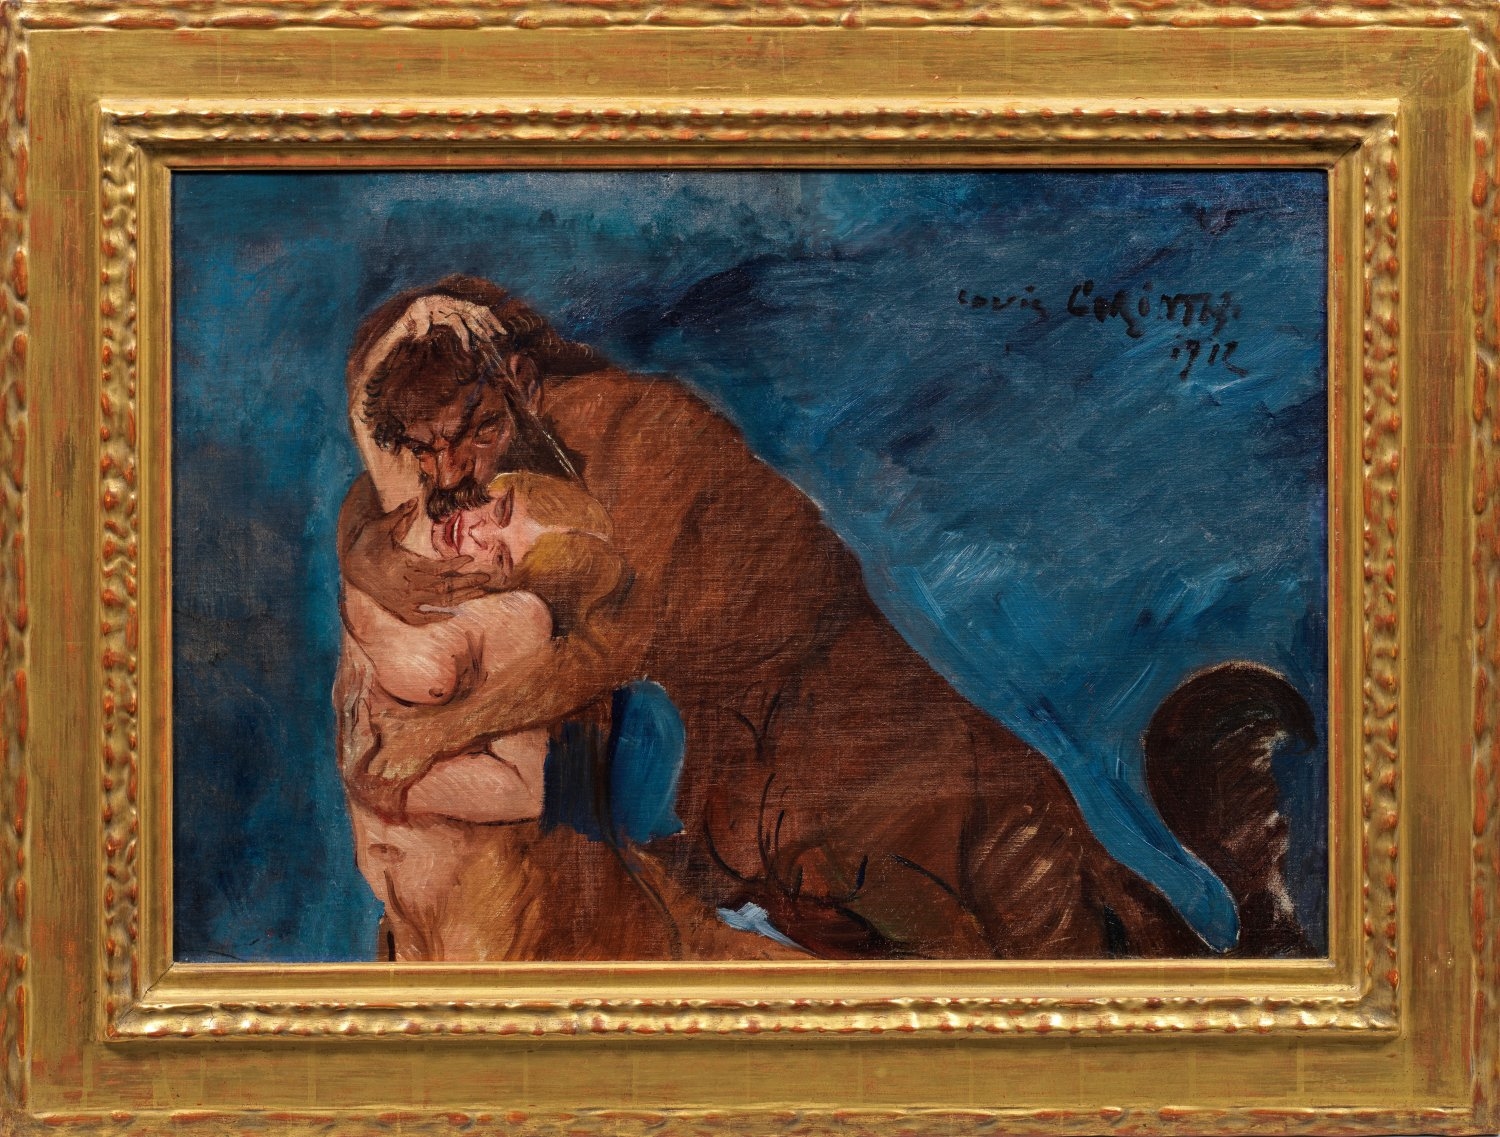 Das furios gemalte Werk mit dem sich begierig vereinigenden Zentaurenpaar entstand 1917 - Lovis Corinth